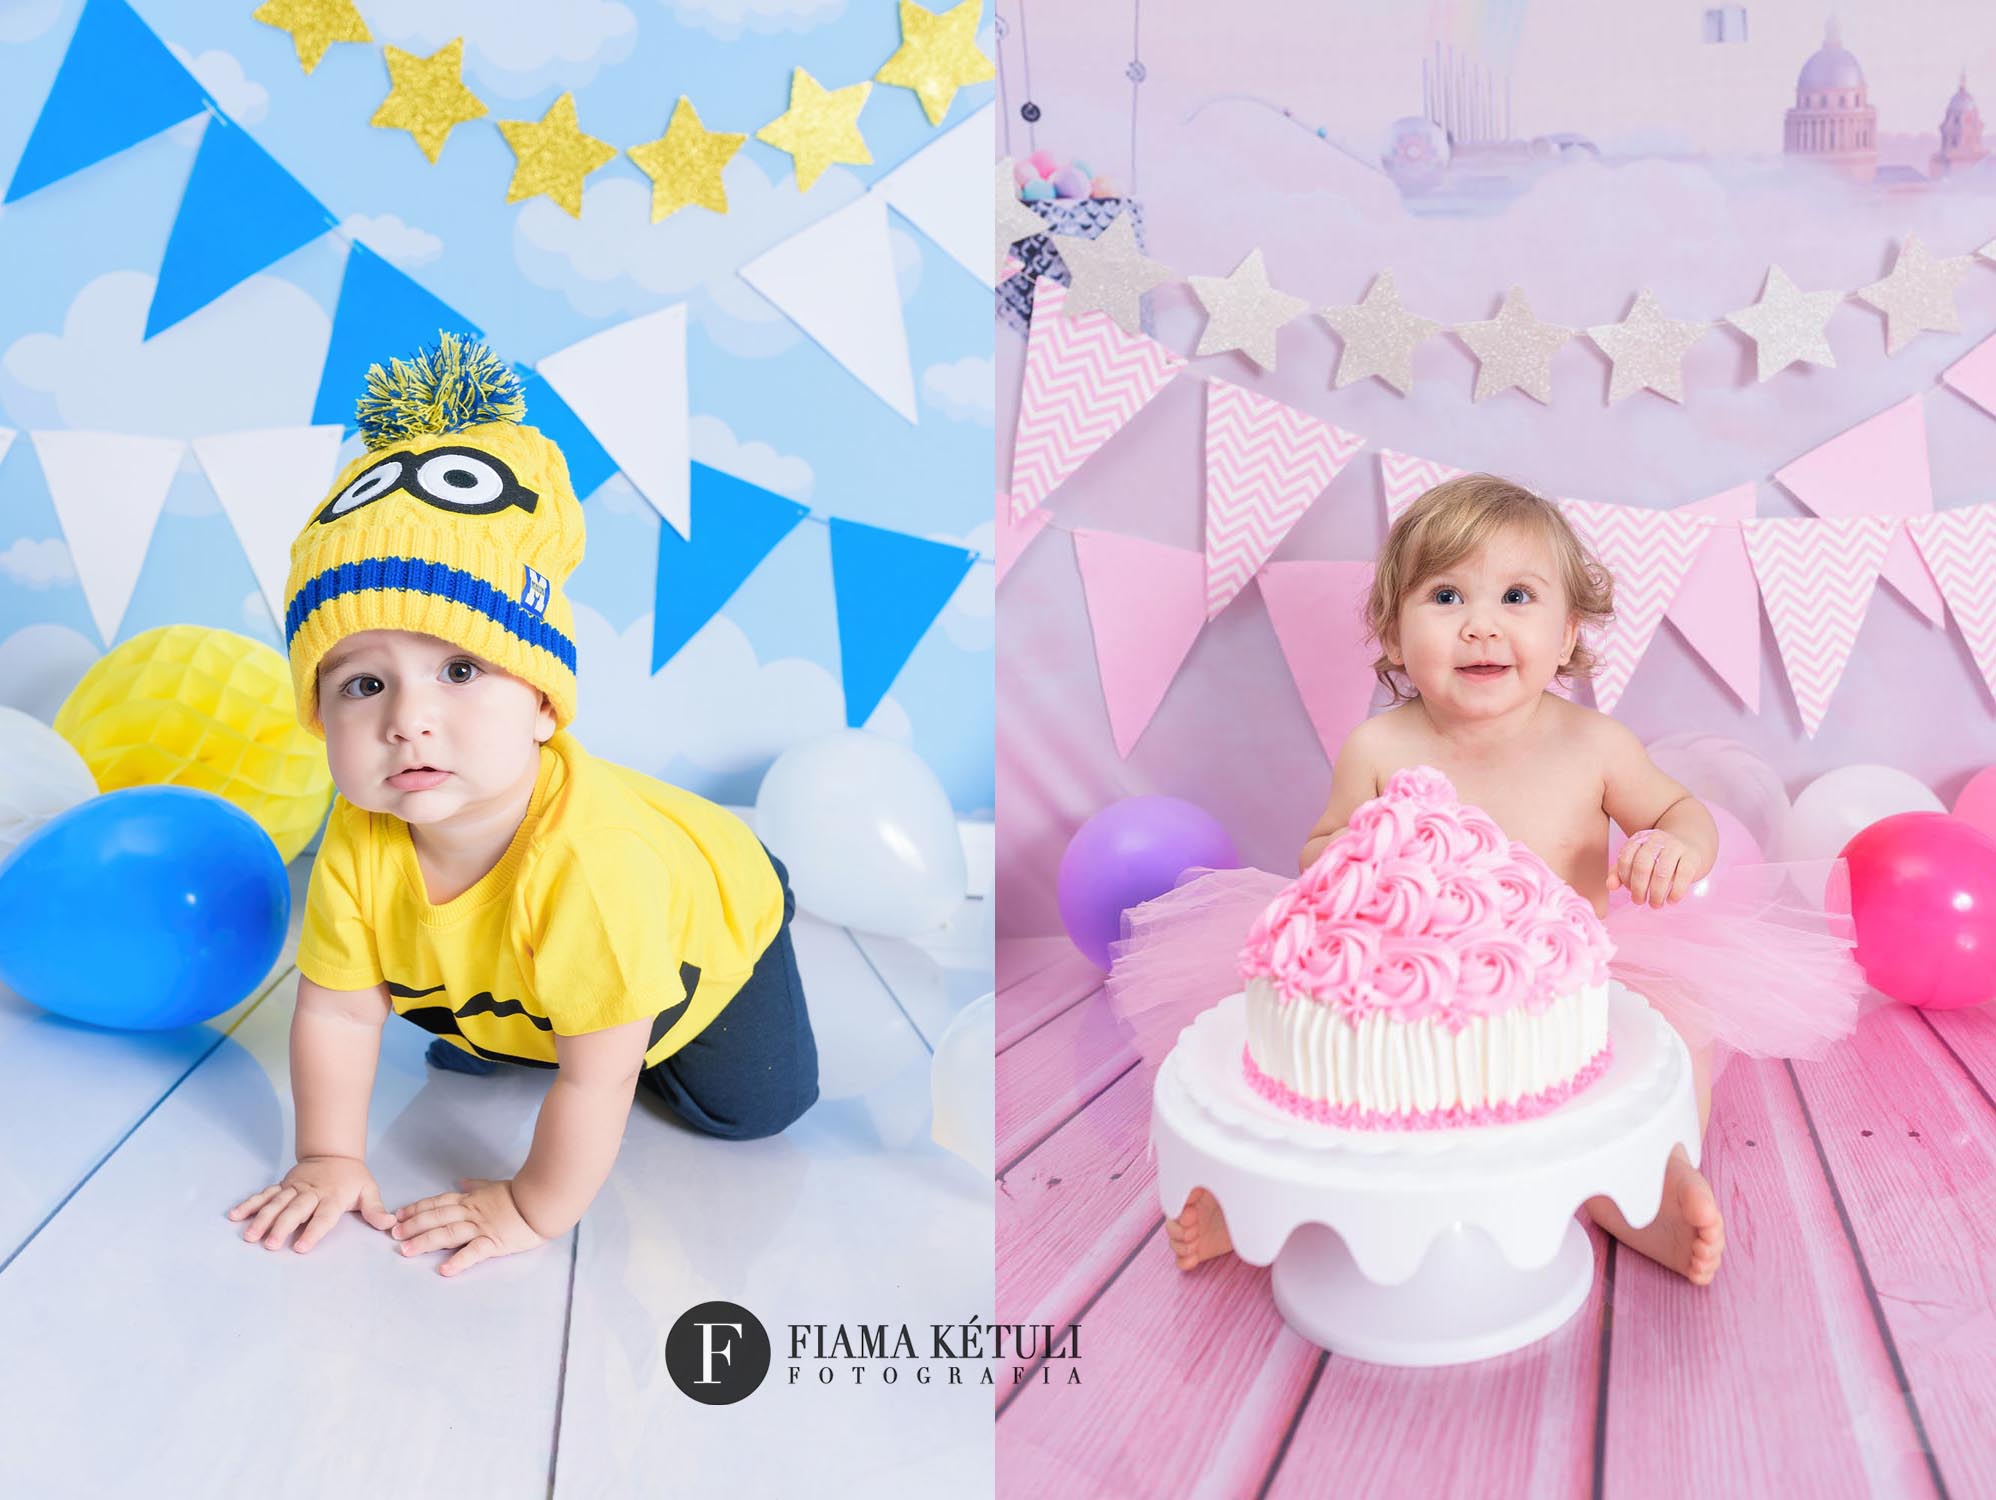 Smash The Cake de menino e menina minios e rosa em estudio fotografo brasilia DF